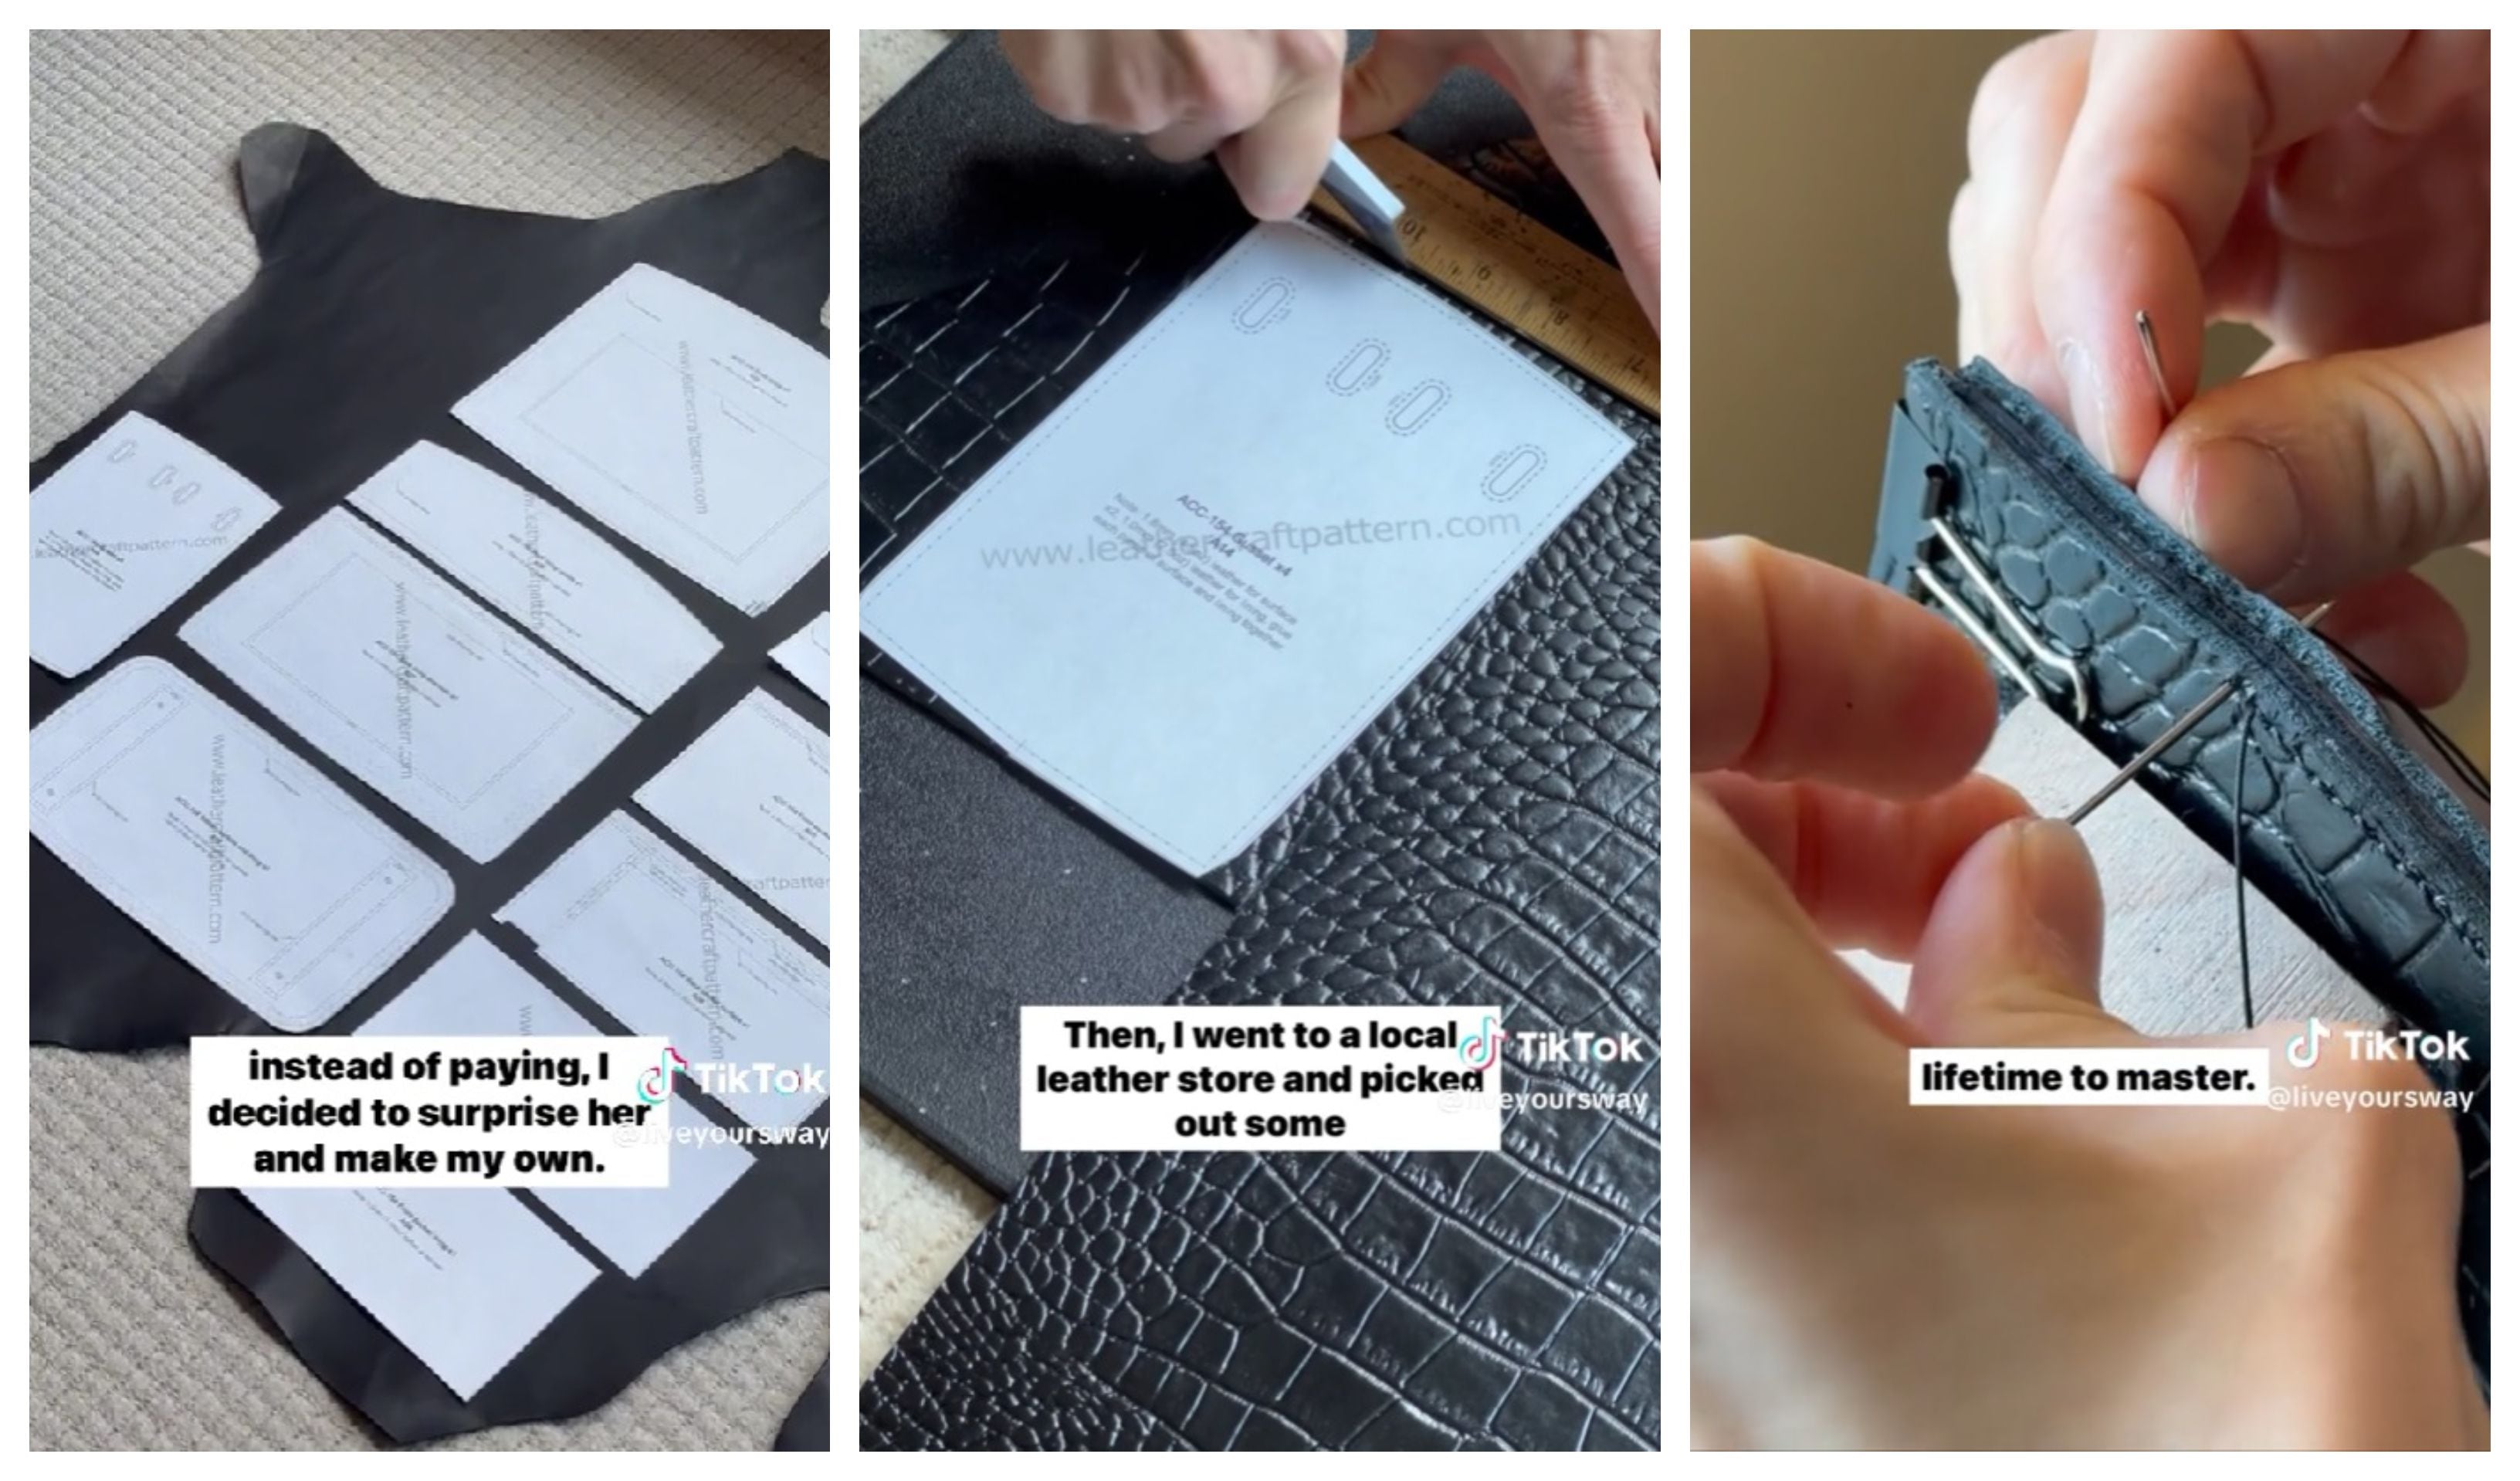 How to Make Hermes Birkin Leather Bag // Part 1 ------ DIY 